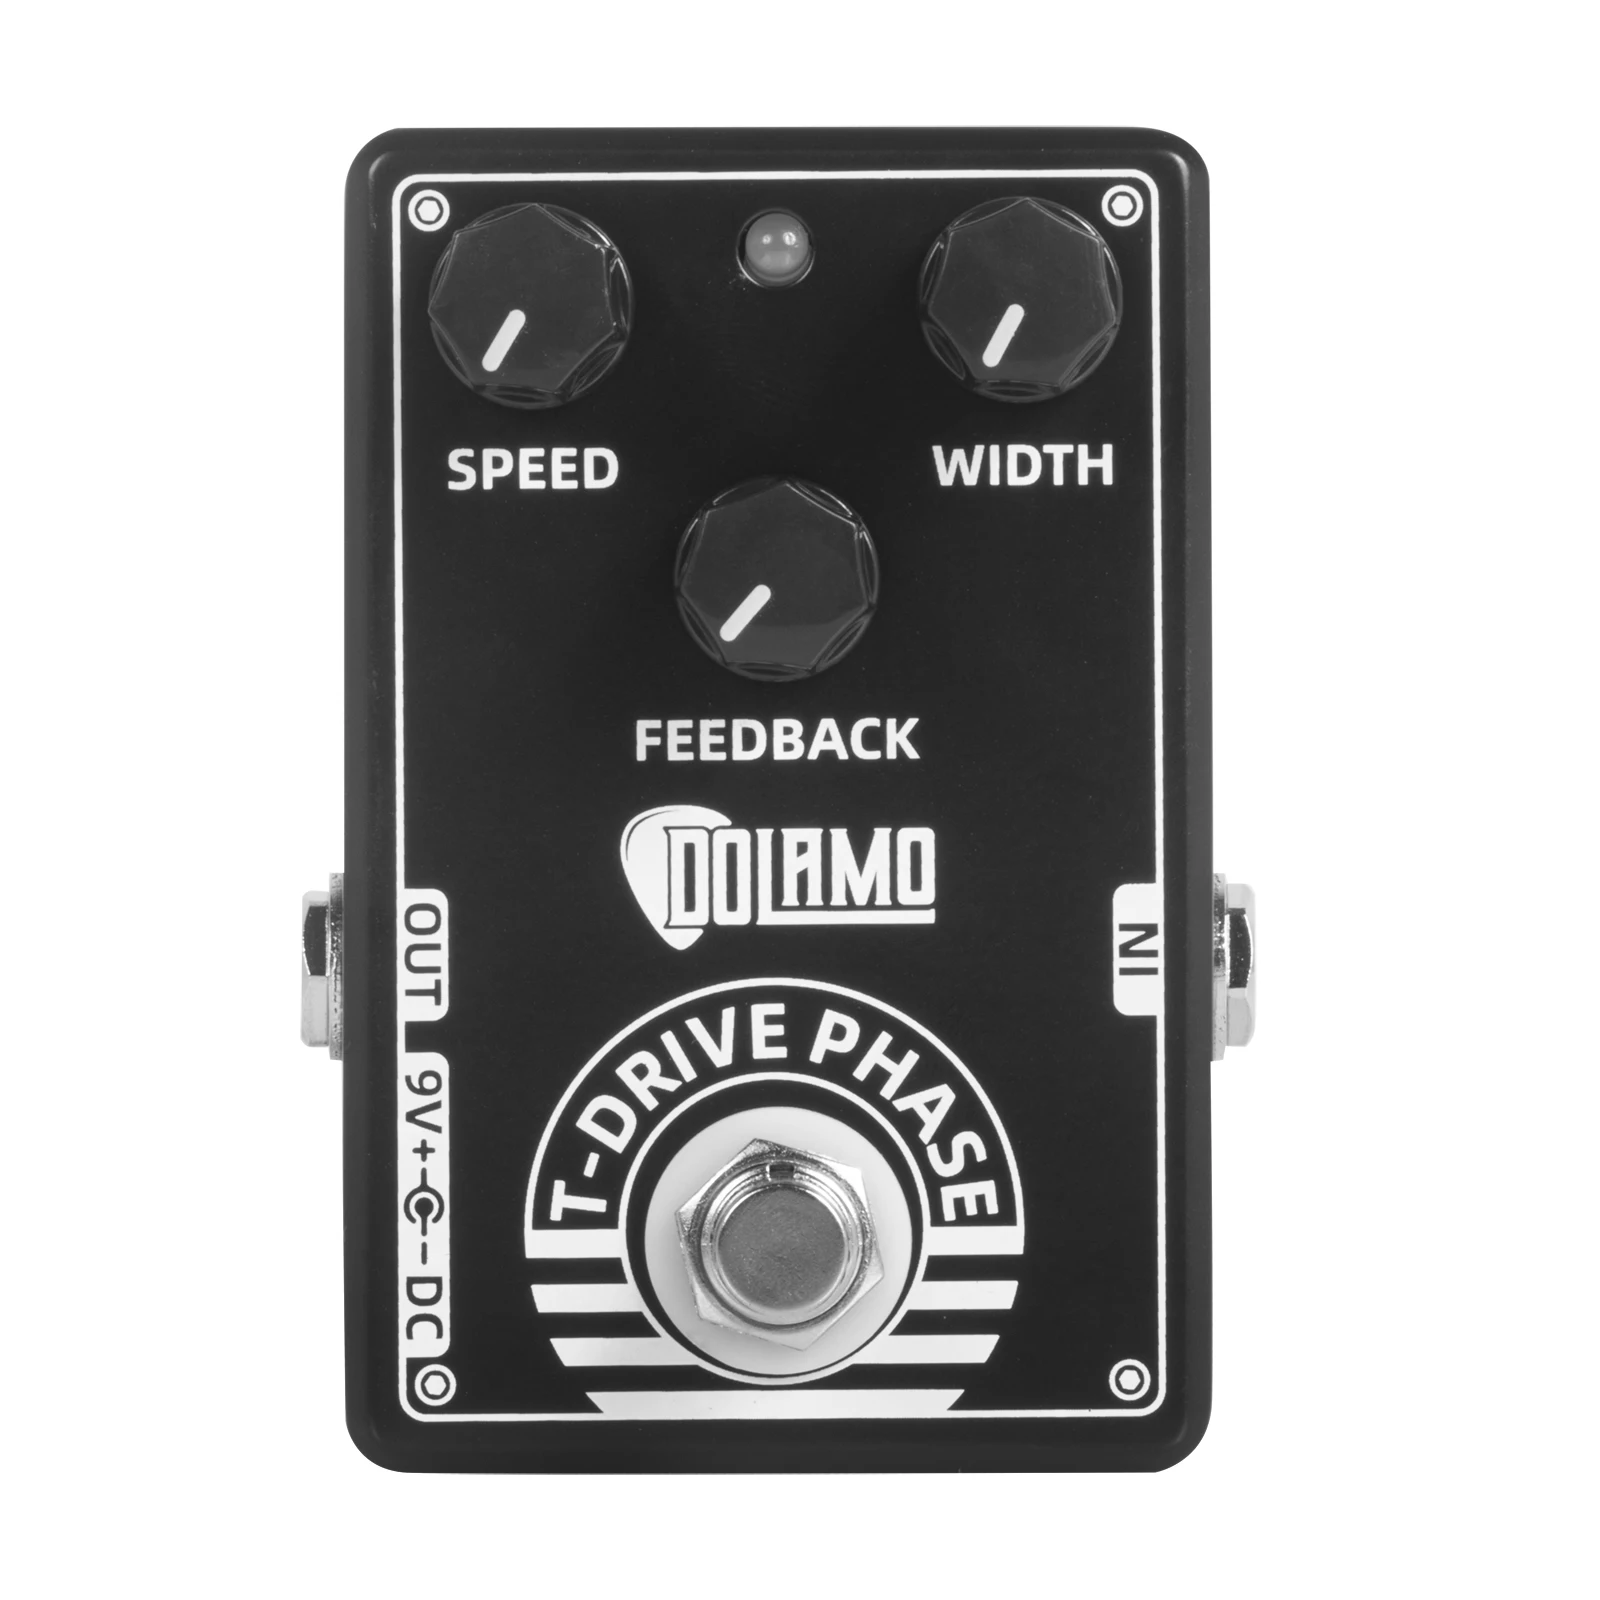 

Dolamo D-15 T-drive Phase Guitar Effect Pedal Guitar Parts & Accessories